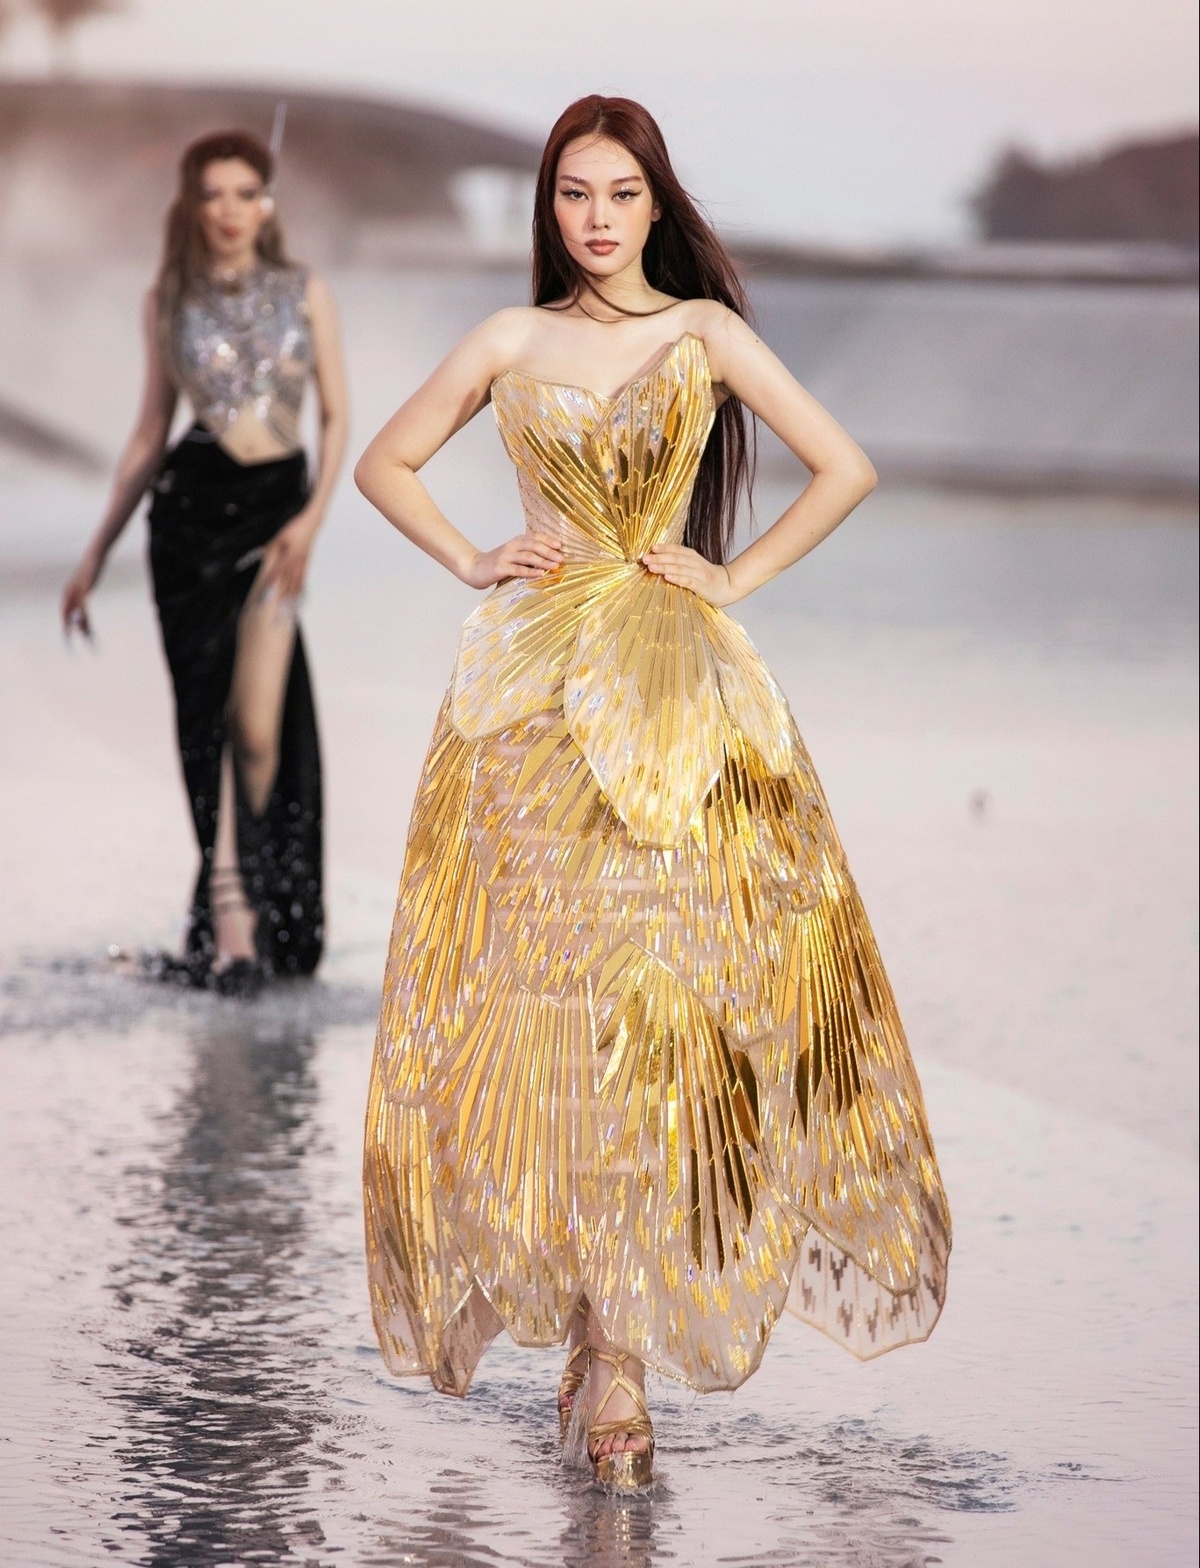 Phạm Băng Băng lộng lẫy khi diện váy của NTK Chung Thanh Phong tại Liên hoan phim Cannes - Ảnh 3